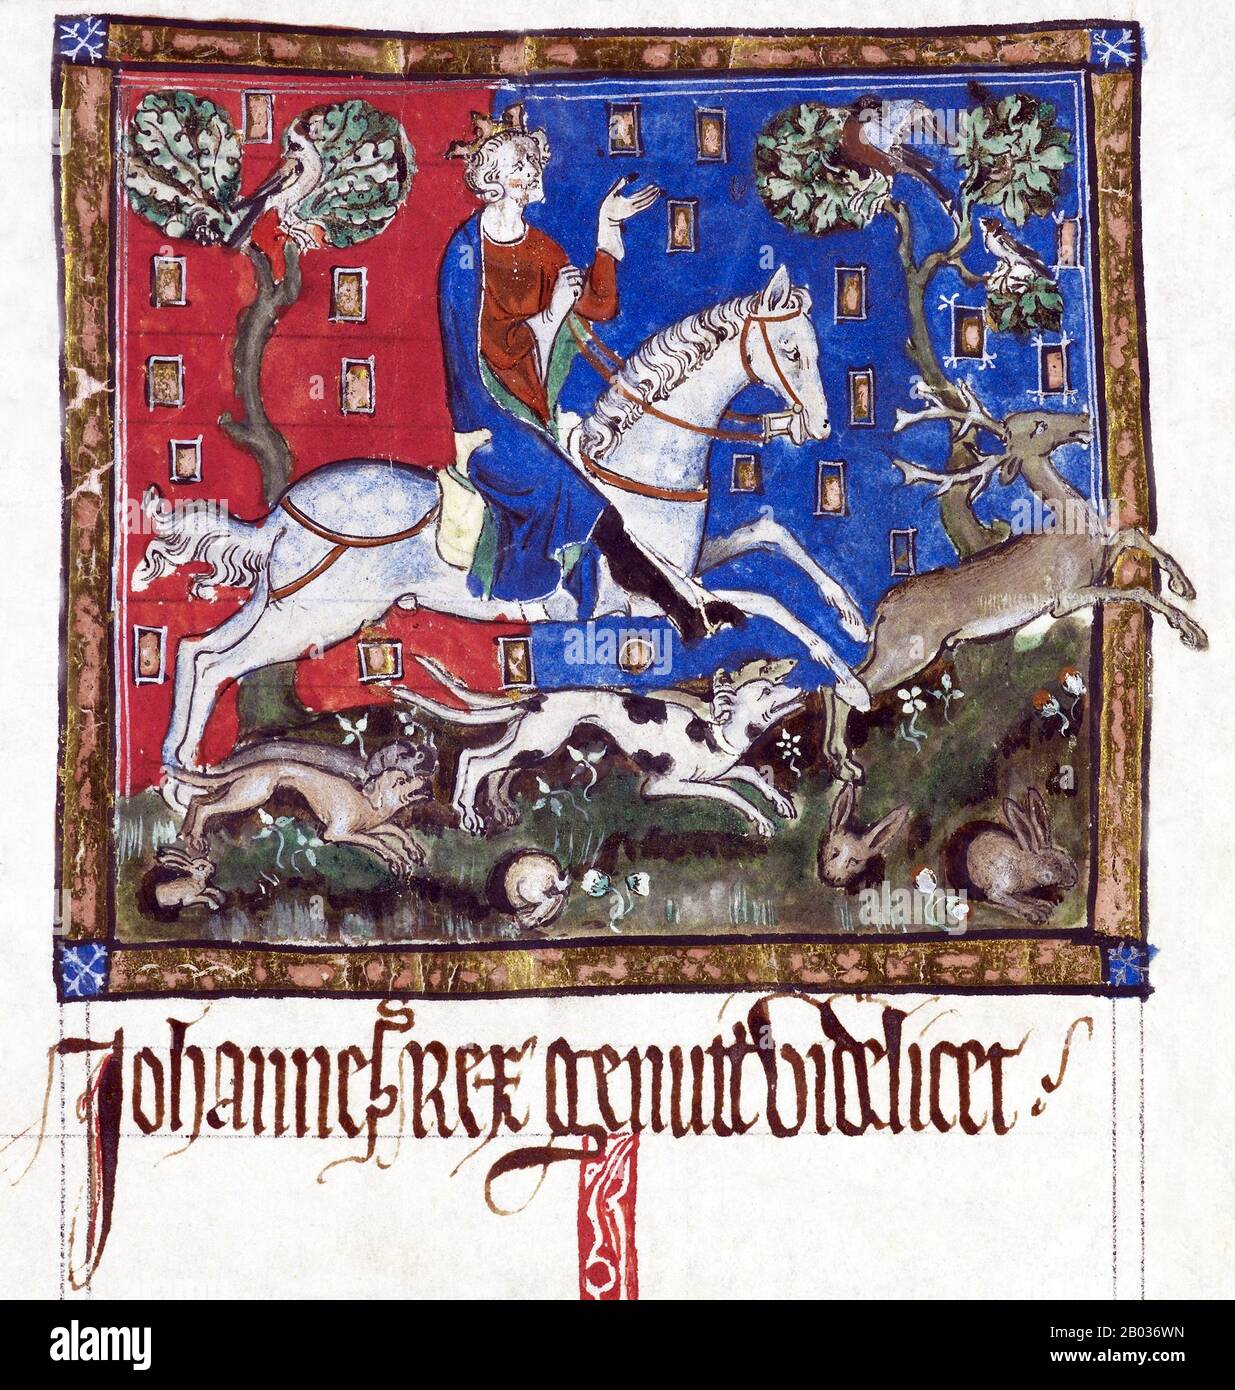 John (24 de diciembre de 1166 – 19 de octubre de 1216), también conocido como John Lackland (francés normando: Johan sanz Terre), fue Rey de Inglaterra desde el 6 de abril de 1199 hasta su muerte en 1216. Juan perdió el Ducado de Normandía ante el rey Felipe II de Francia, resultando en el colapso de la mayor parte del Imperio Angevin y contribuyendo al crecimiento subsiguiente en el poder de la dinastía Capetiana durante el siglo 13. La revuelta baronial al final del reinado de Juan condujo al sellado de la Carta Magna, un documento de inmensa importancia considerado como un paso temprano en la evolución de la constitución del Reino Unido. Foto de stock